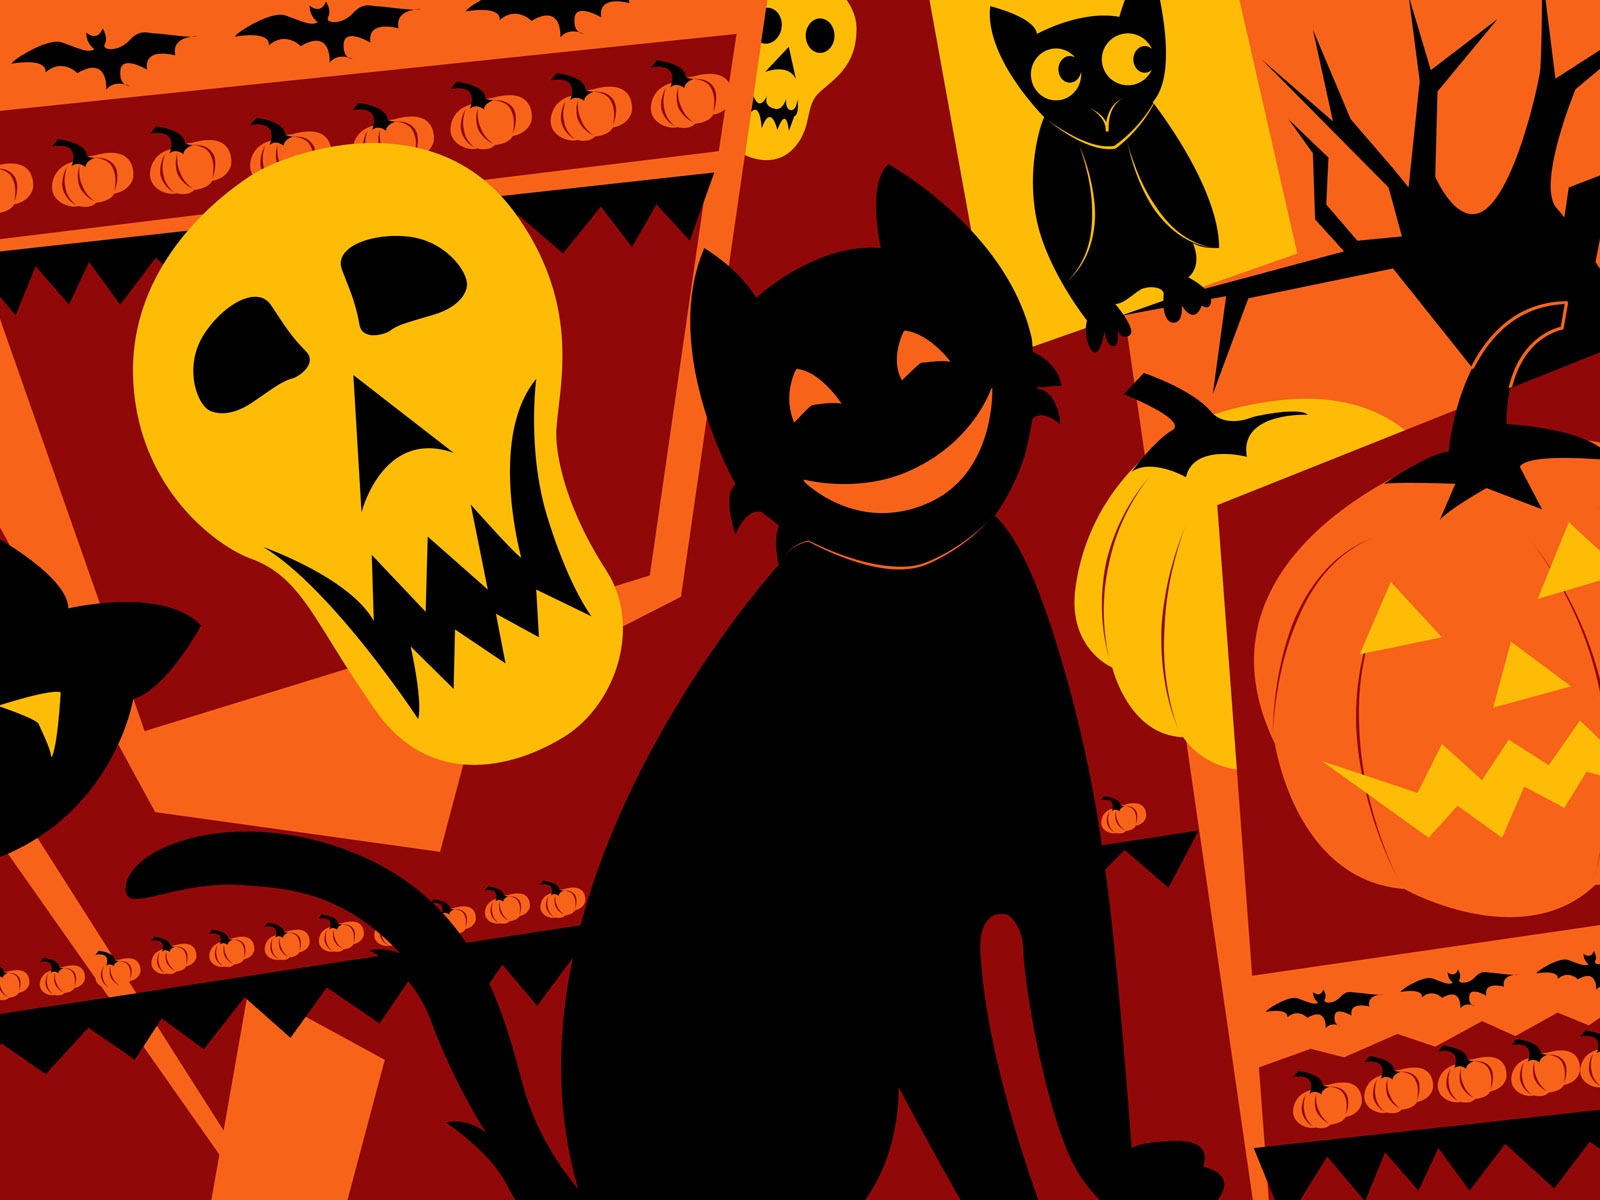 Fondos de Halloween temáticos (5) #14 - 1600x1200